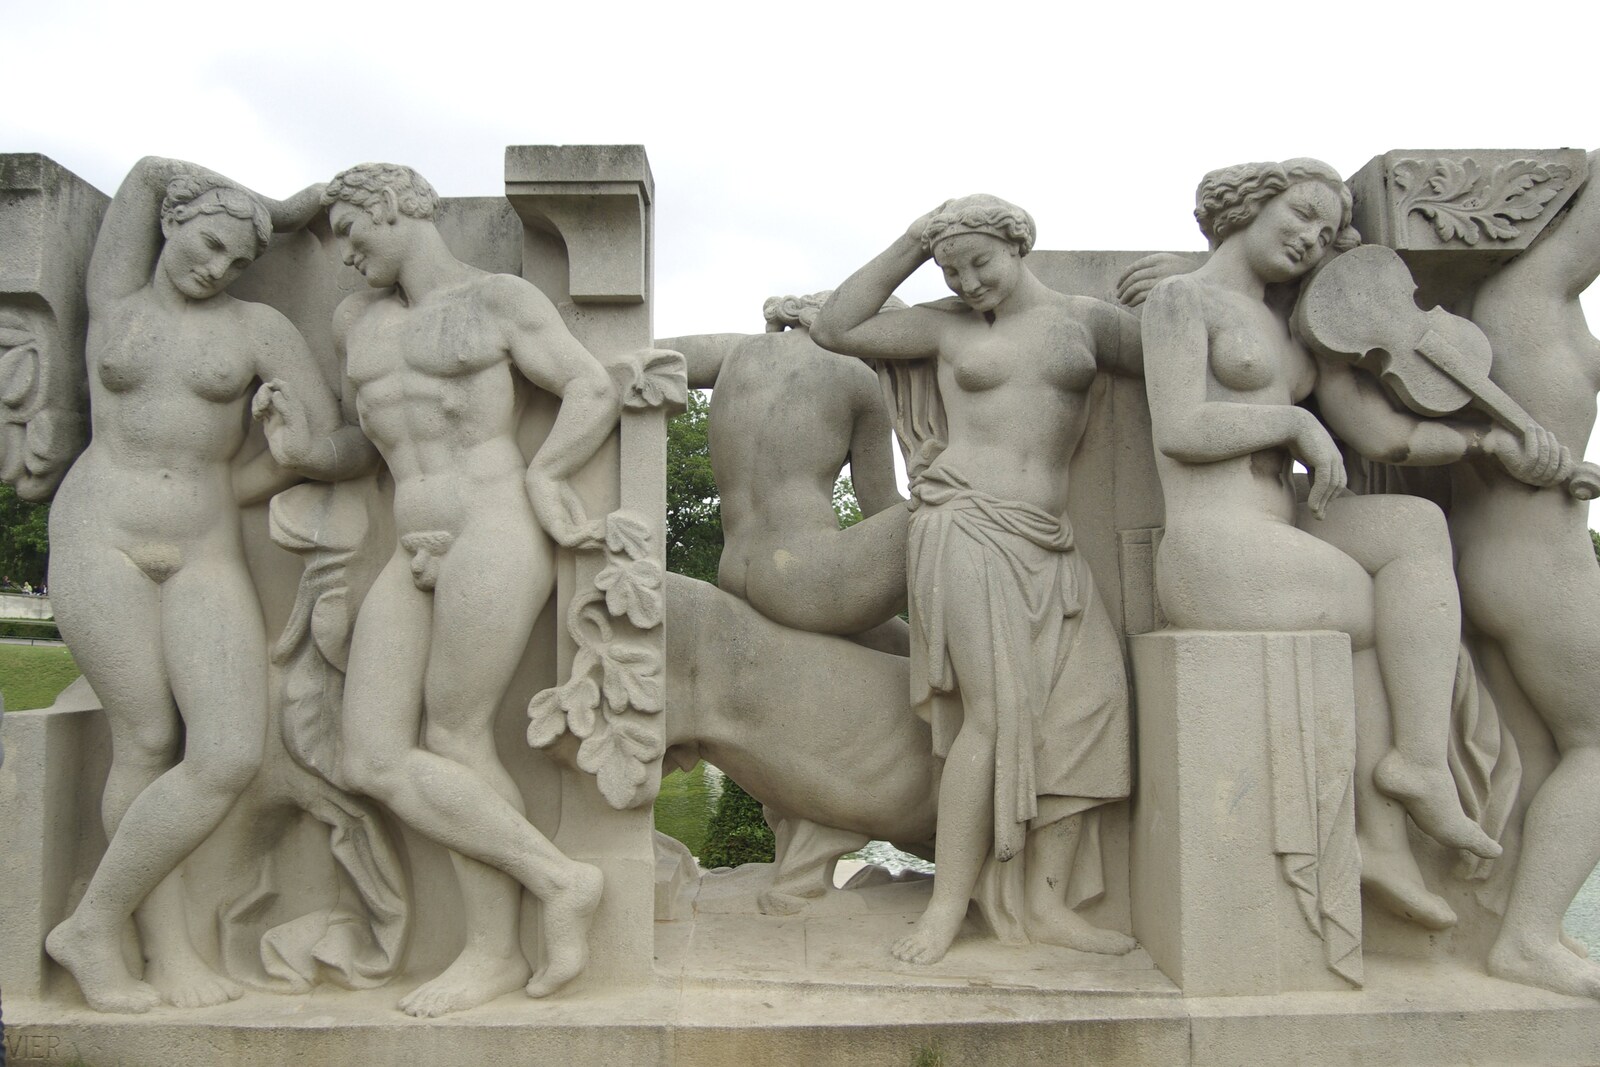 Genesis Live at Parc Des Princes, Paris, France - 30th June 2007: Statues get their bits out